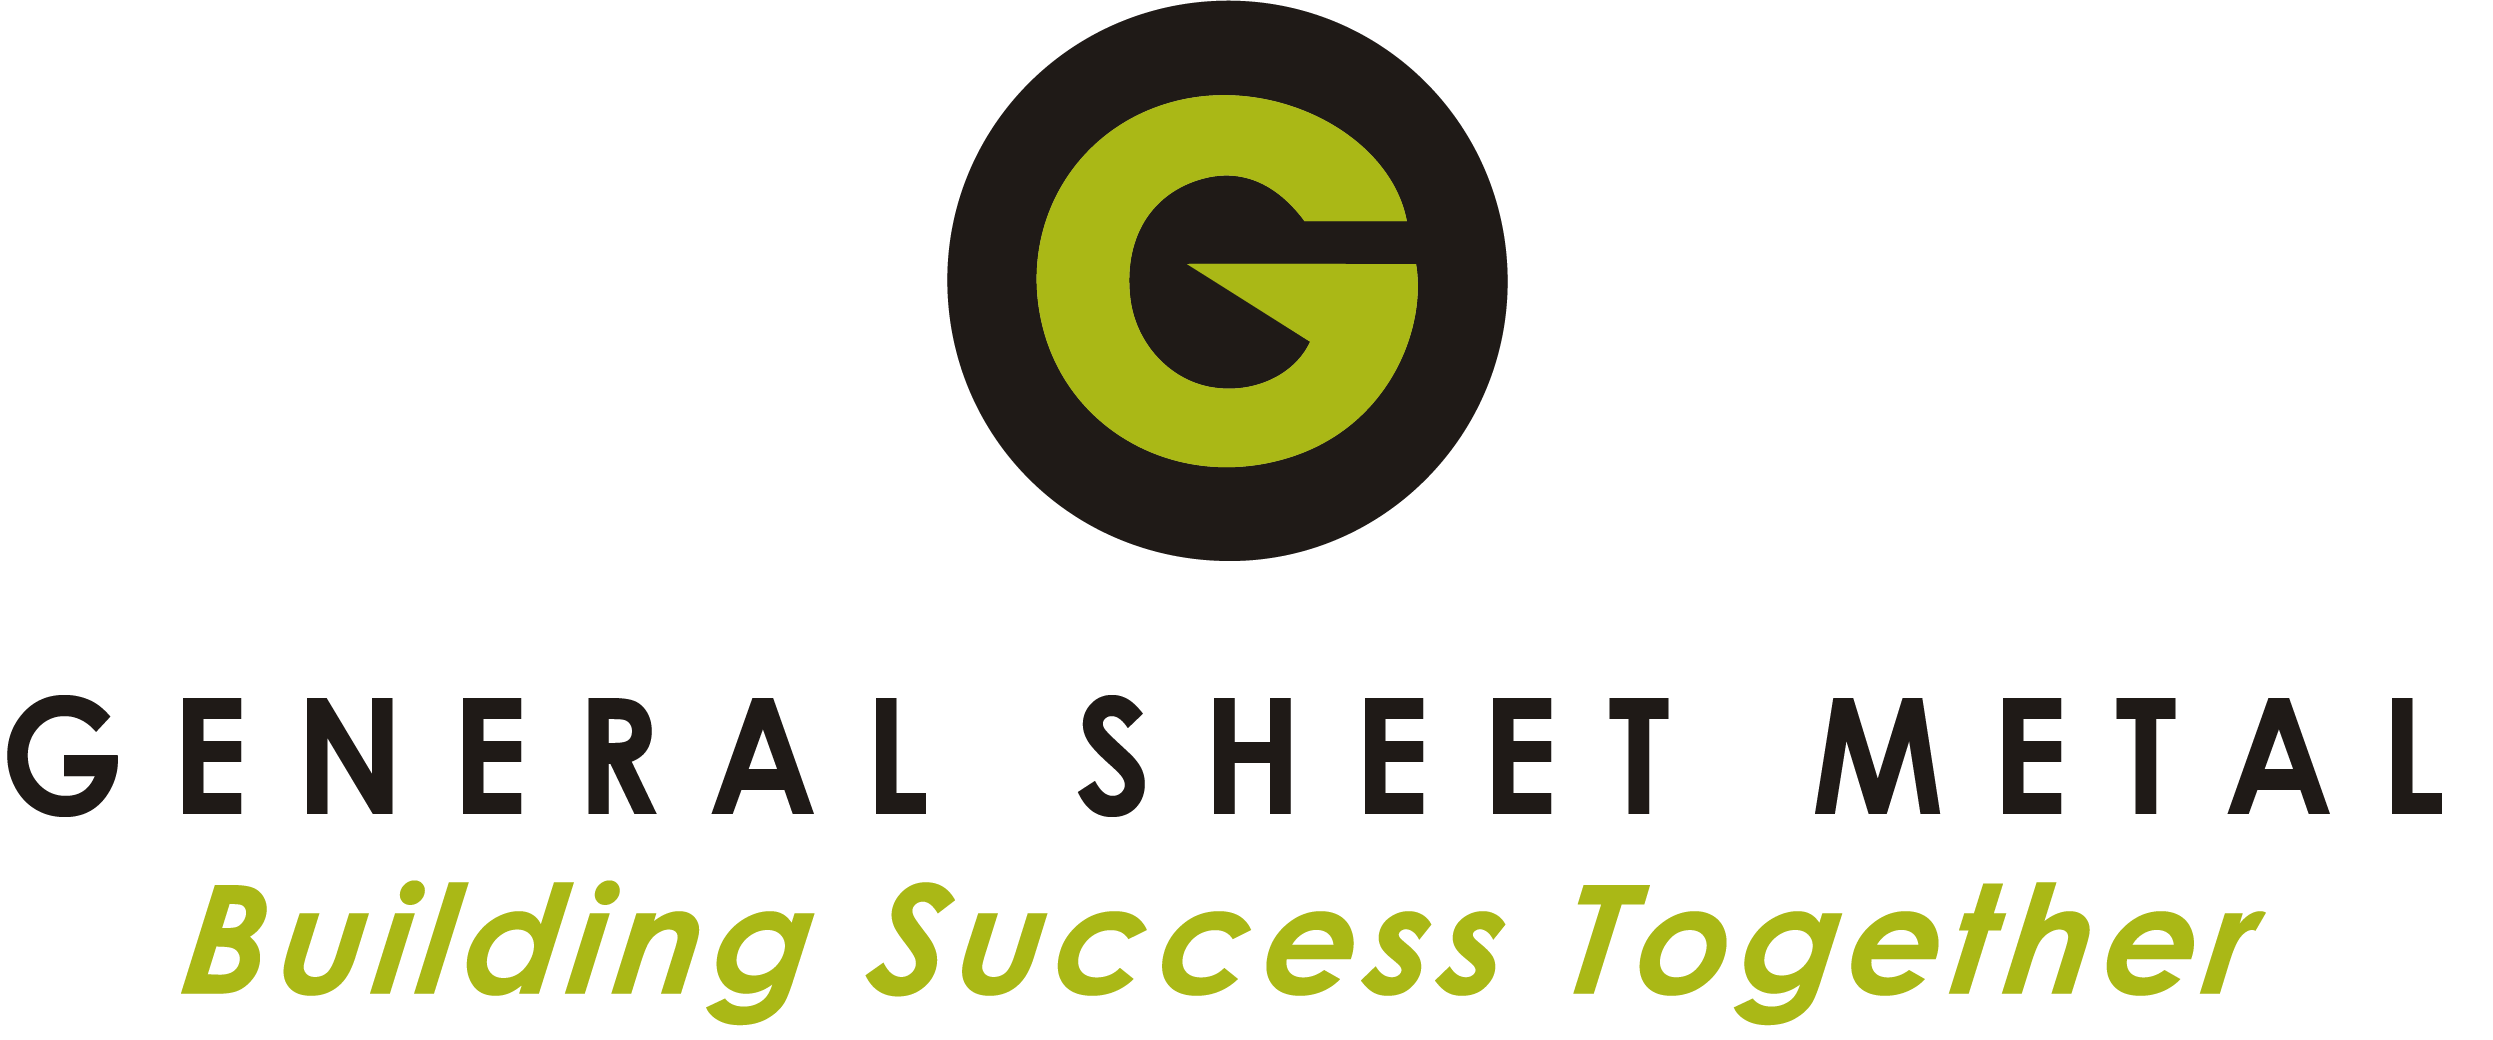 General Sheet Metal logo